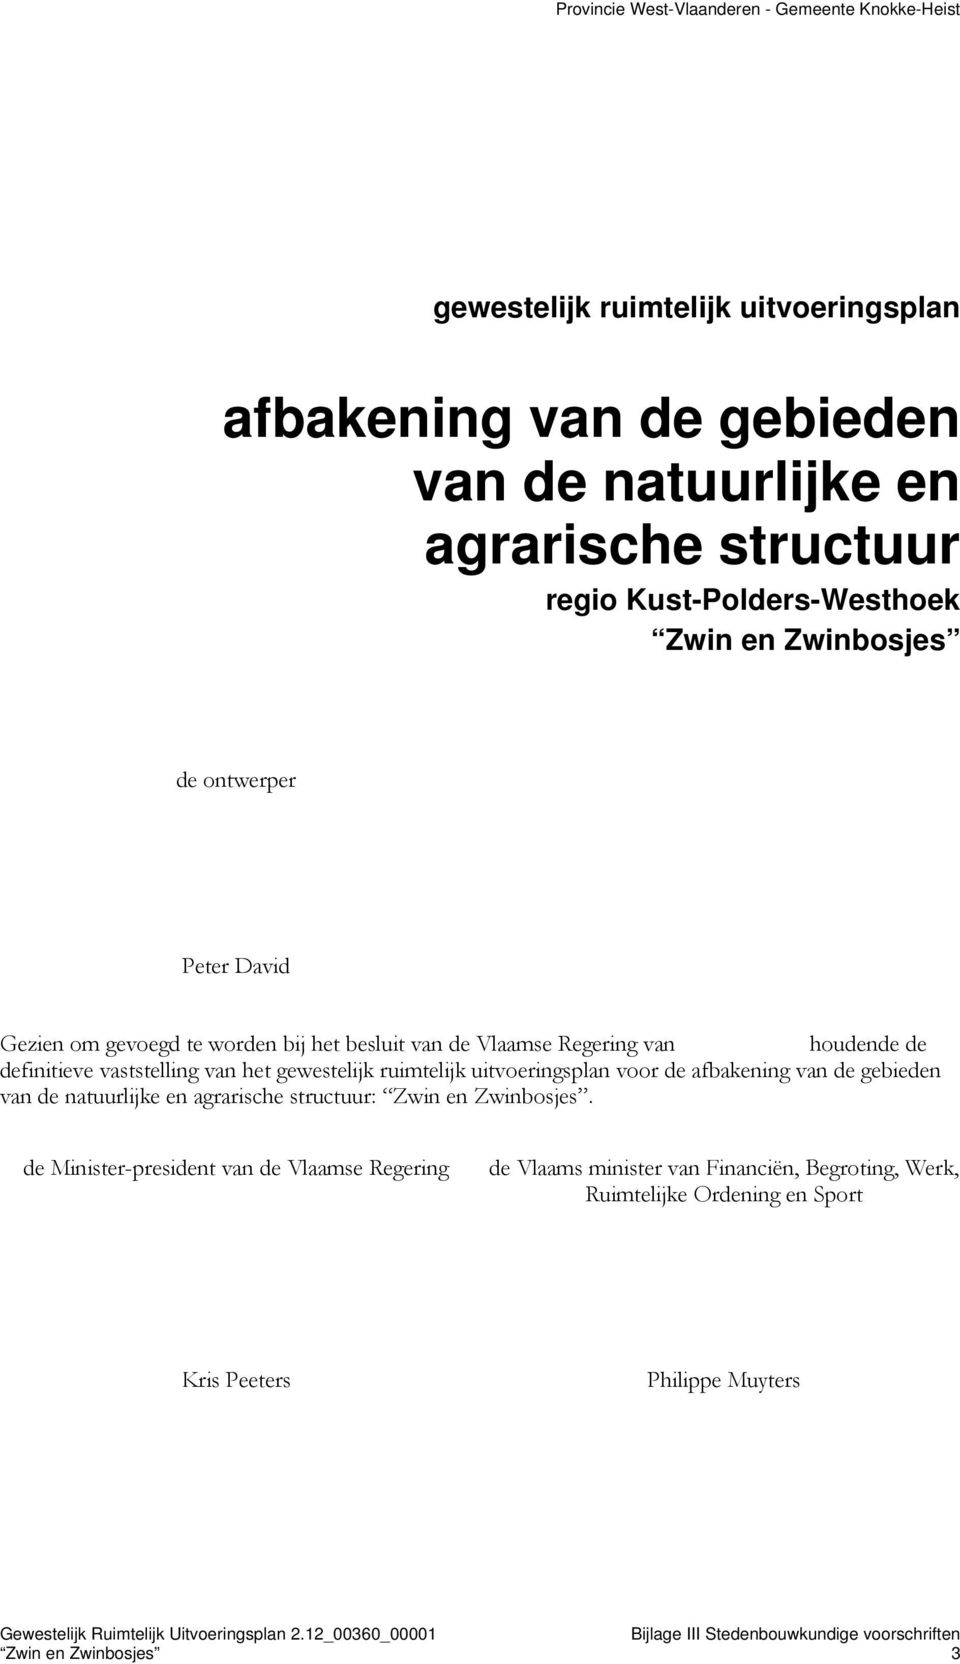 gewestelijk ruimtelijk uitvoeringsplan voor de afbakening van de gebieden van de natuurlijke en agrarische structuur: Zwin en Zwinbosjes.